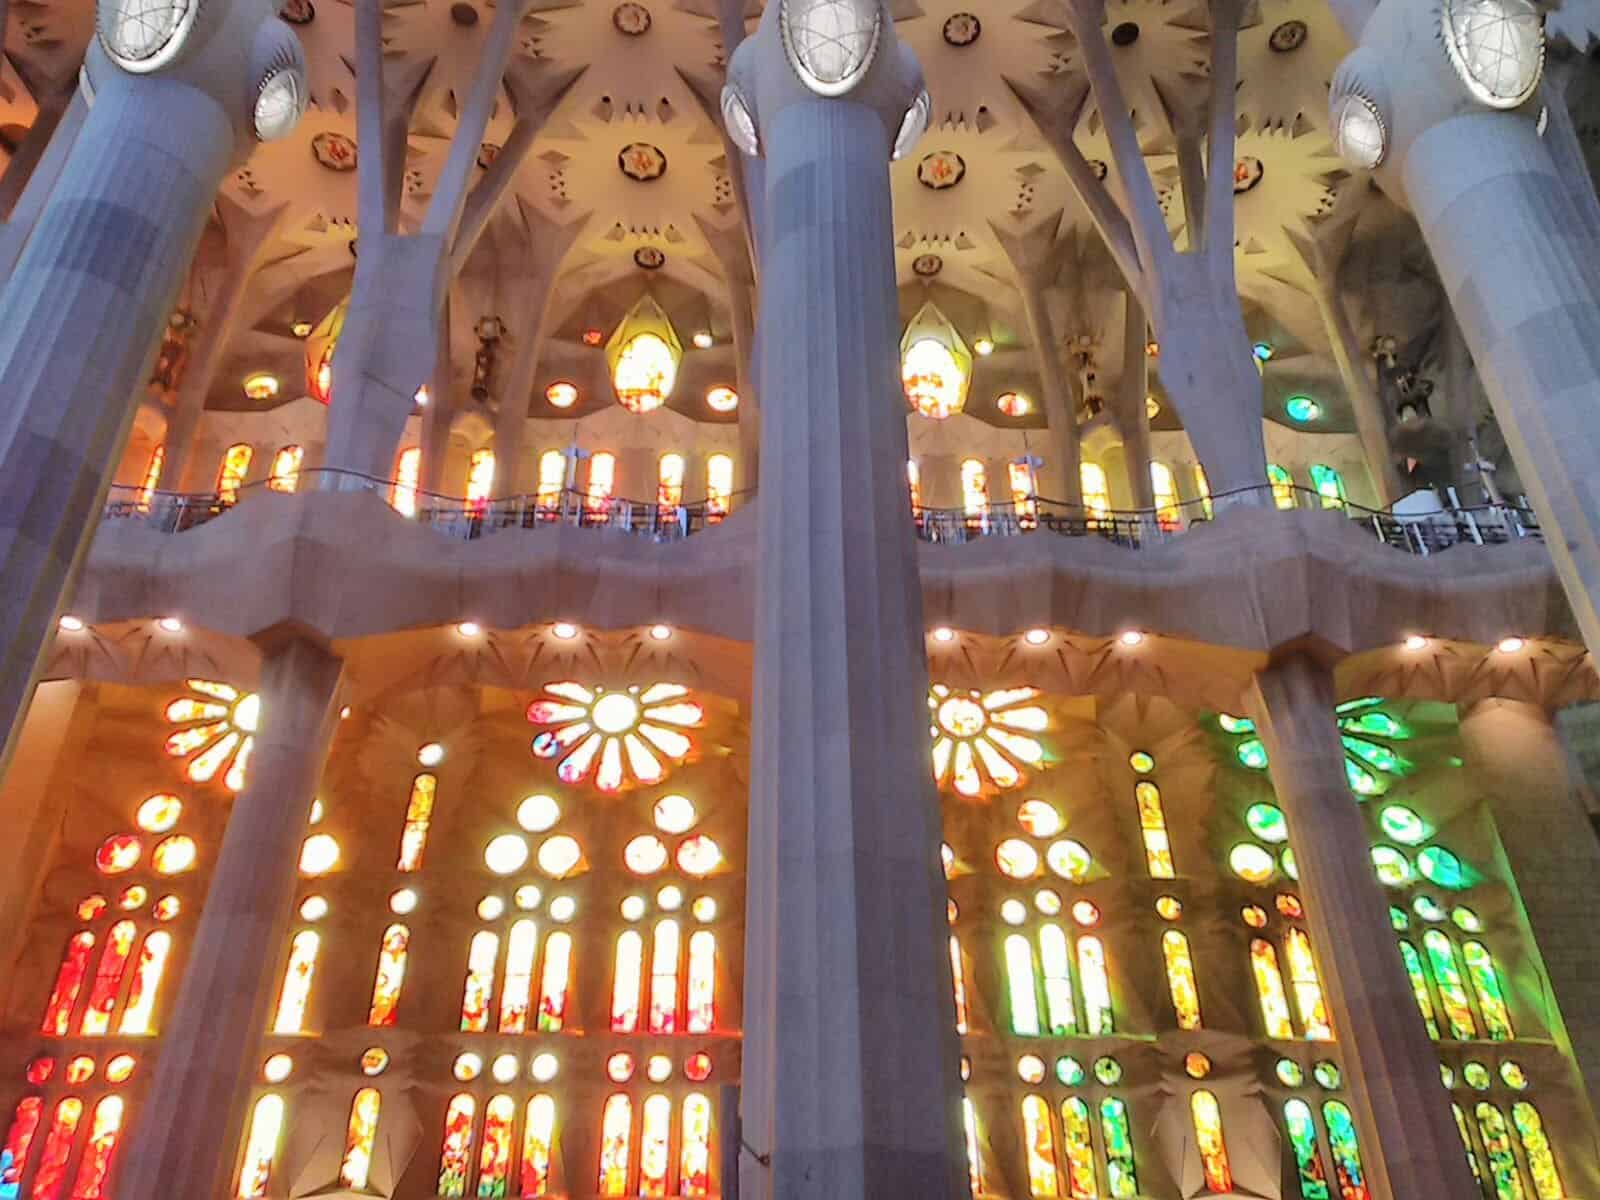 The colorful lights inside the Sagrada Familia